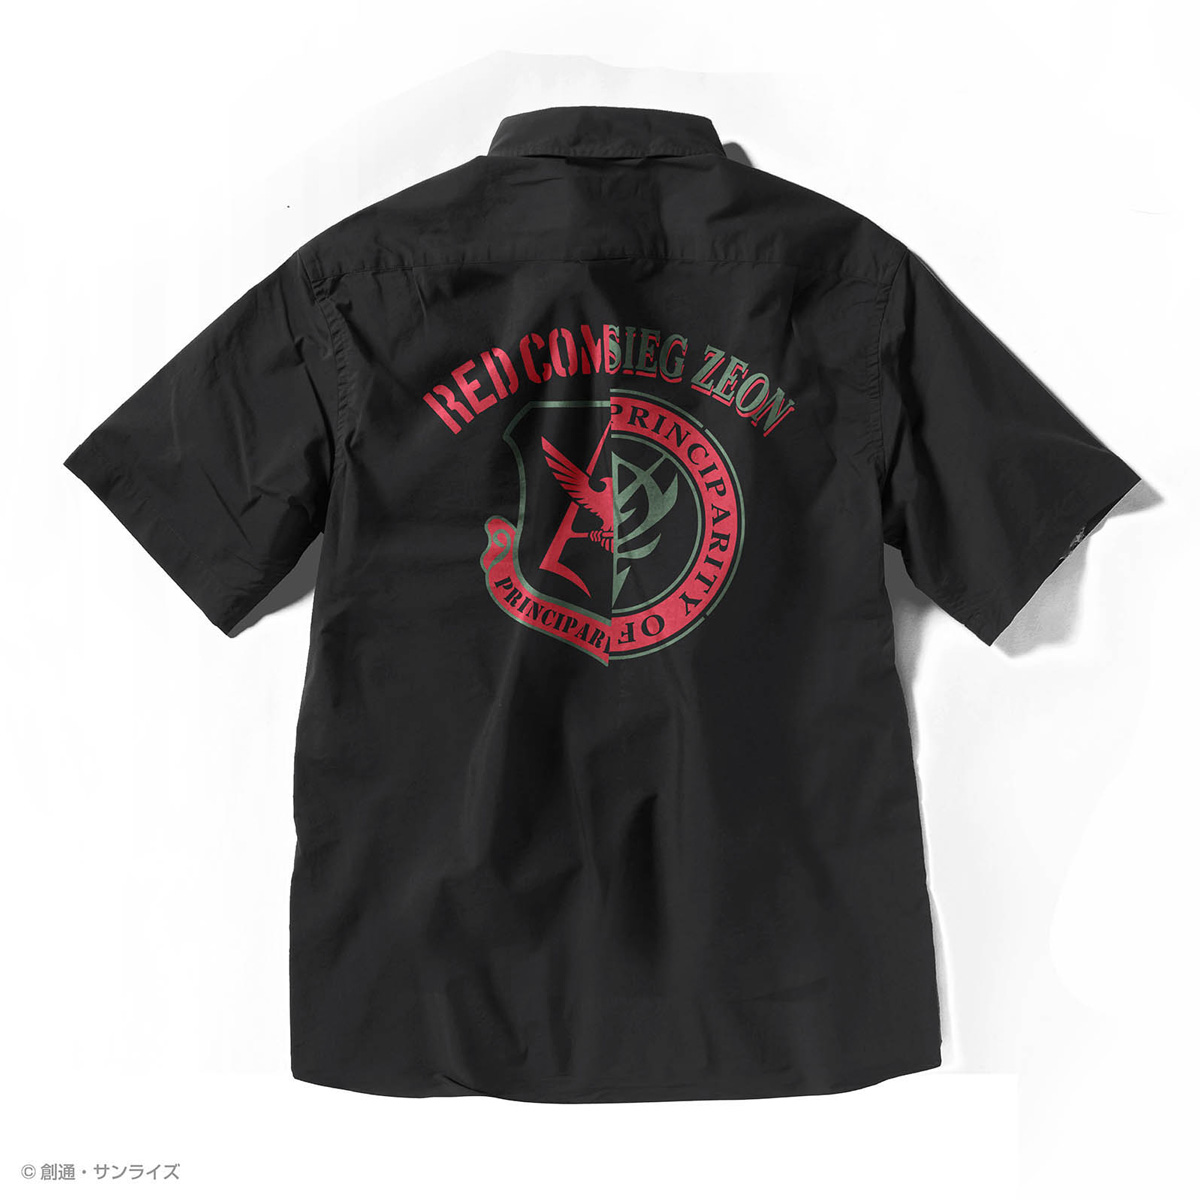 STRICT-G『機動戦士ガンダム』 クールマックス 半袖オープンカラーPt.シャツ RED COMET